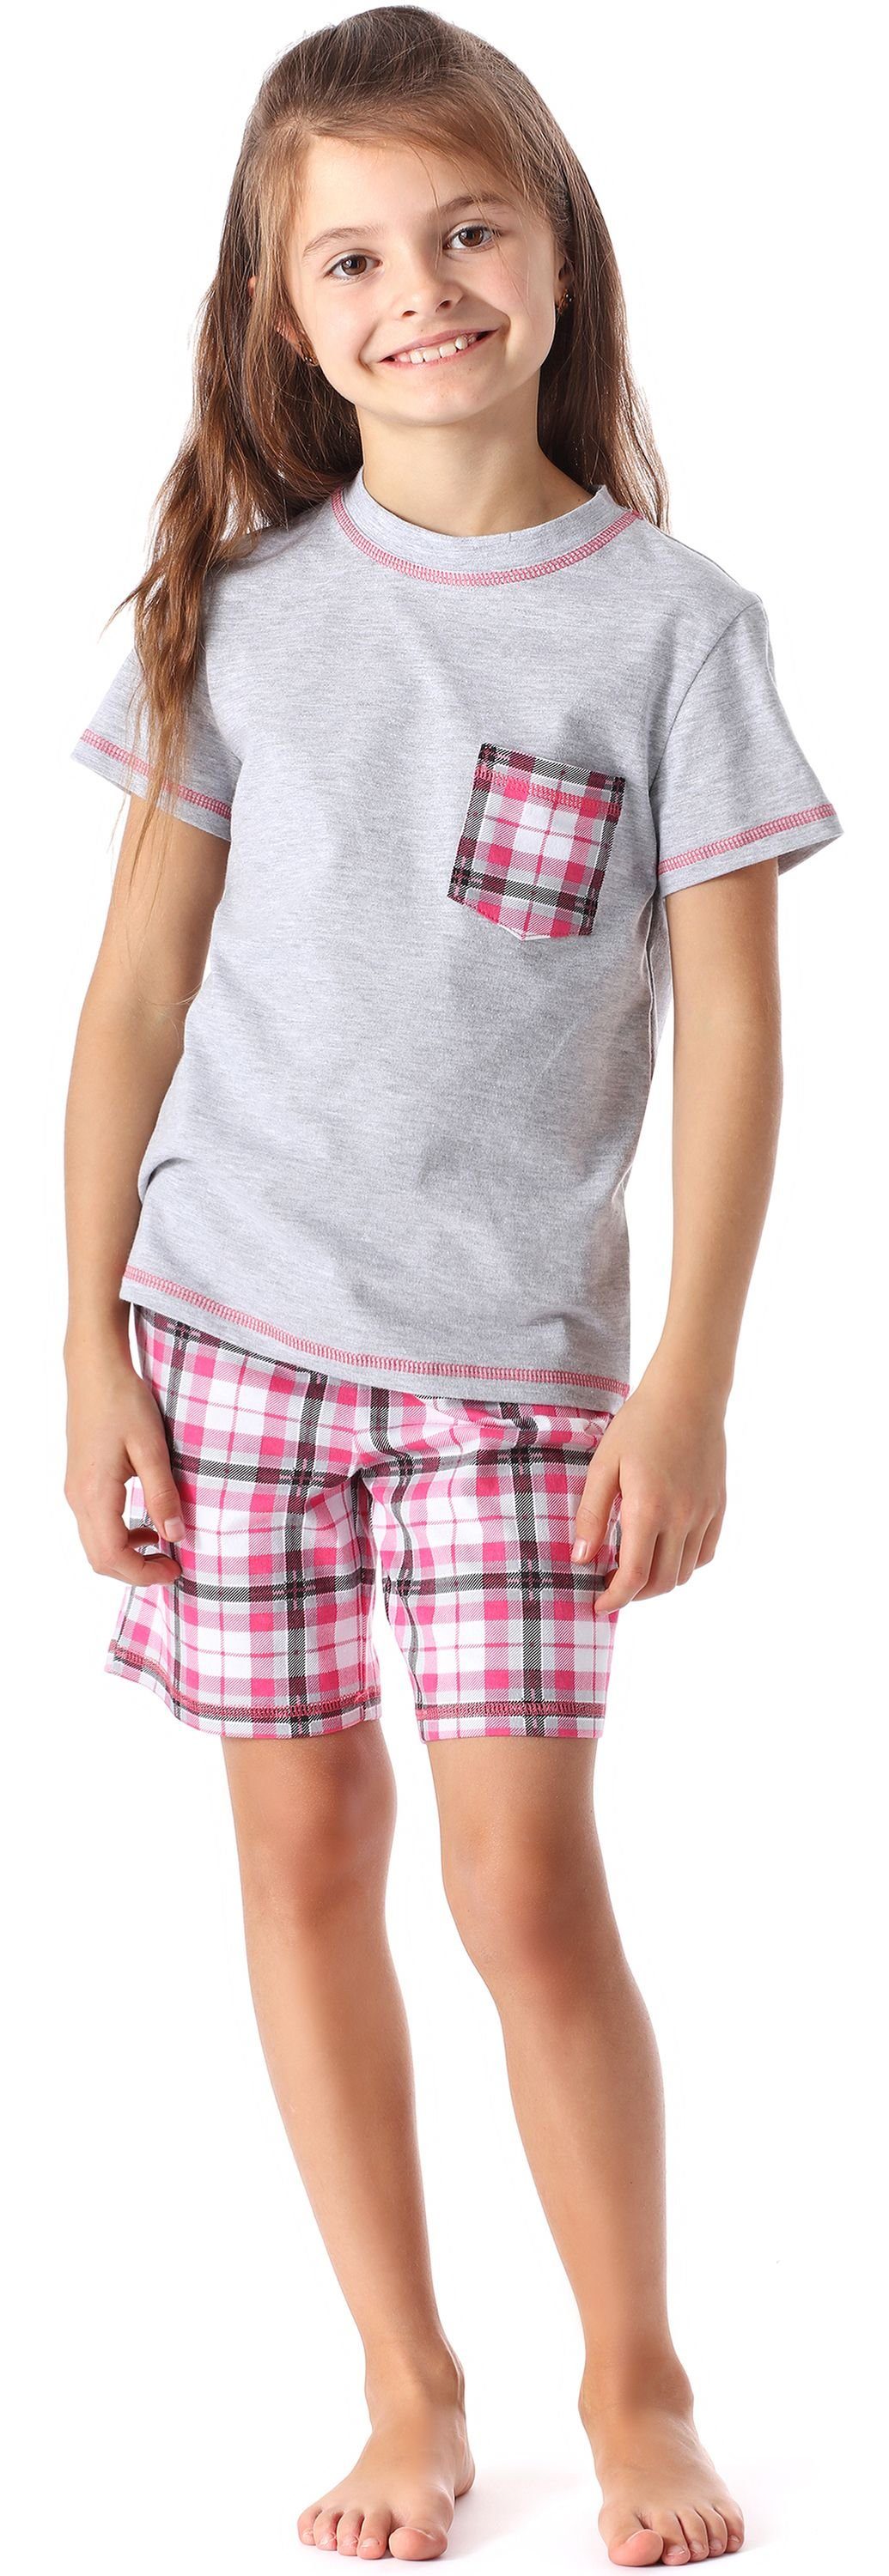 MS10-292 Schlafanzug Set Melange/Kariert aus Mädchen Schlafanzüge Style Kurz Baumwolle Merry Pyjama